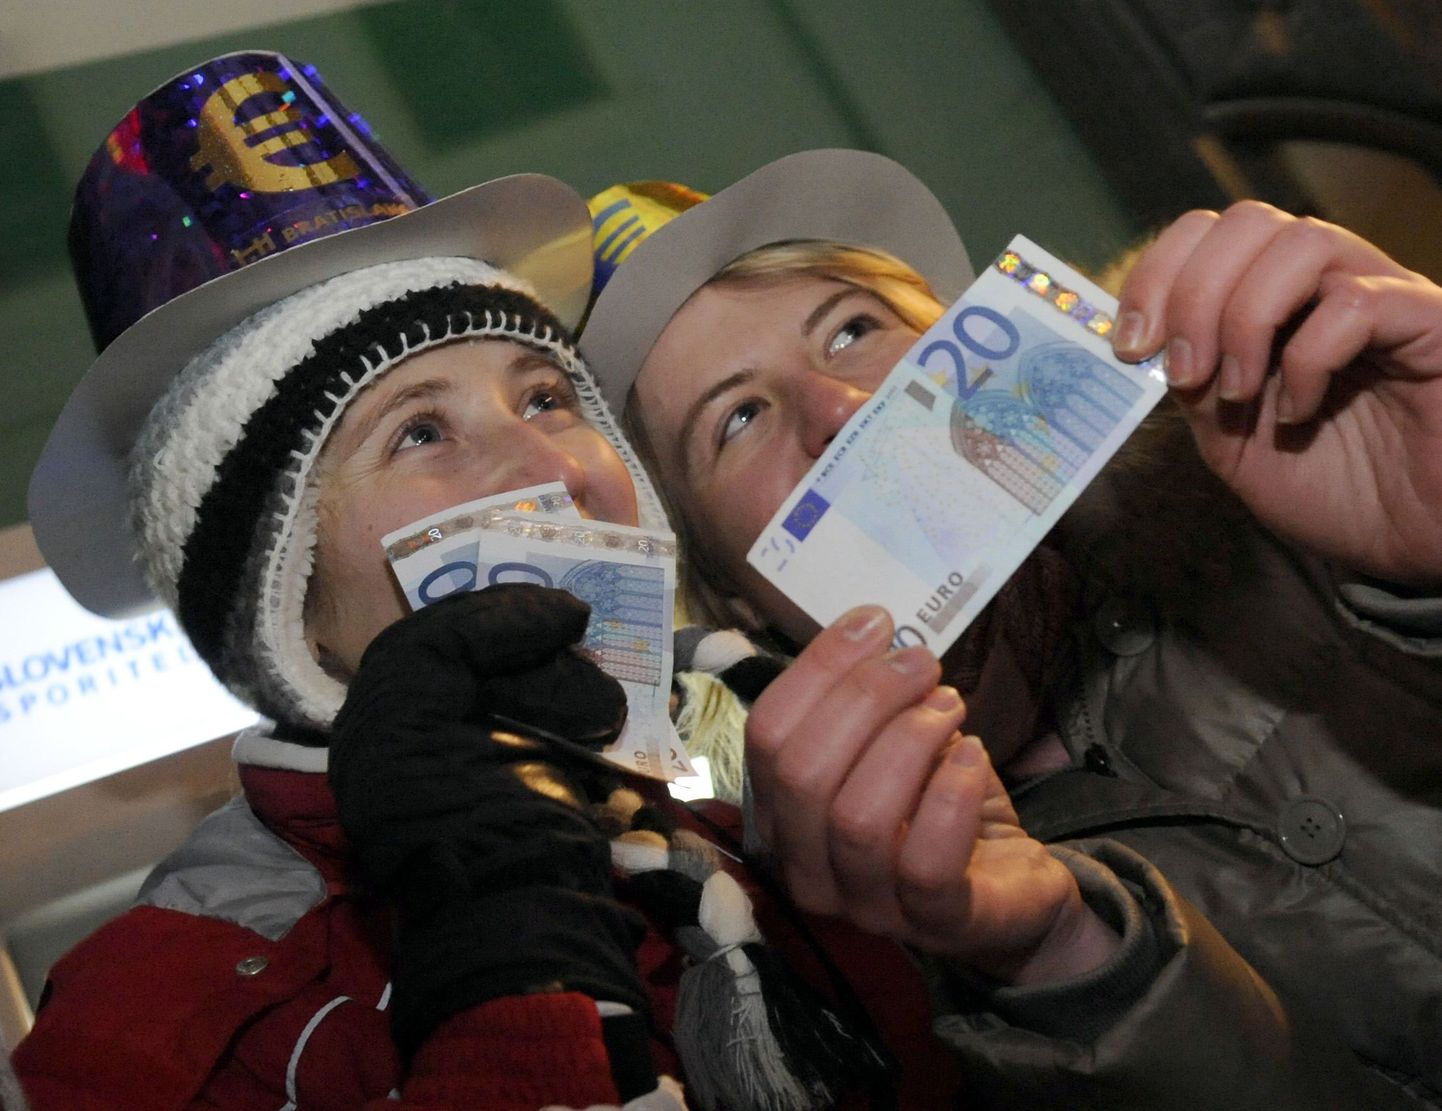 Slovakkias oli 1. jaanuar rõõmupäev, riik võttis kasutusele euro. Eestil ei pruugi see unistus niipea täituda.